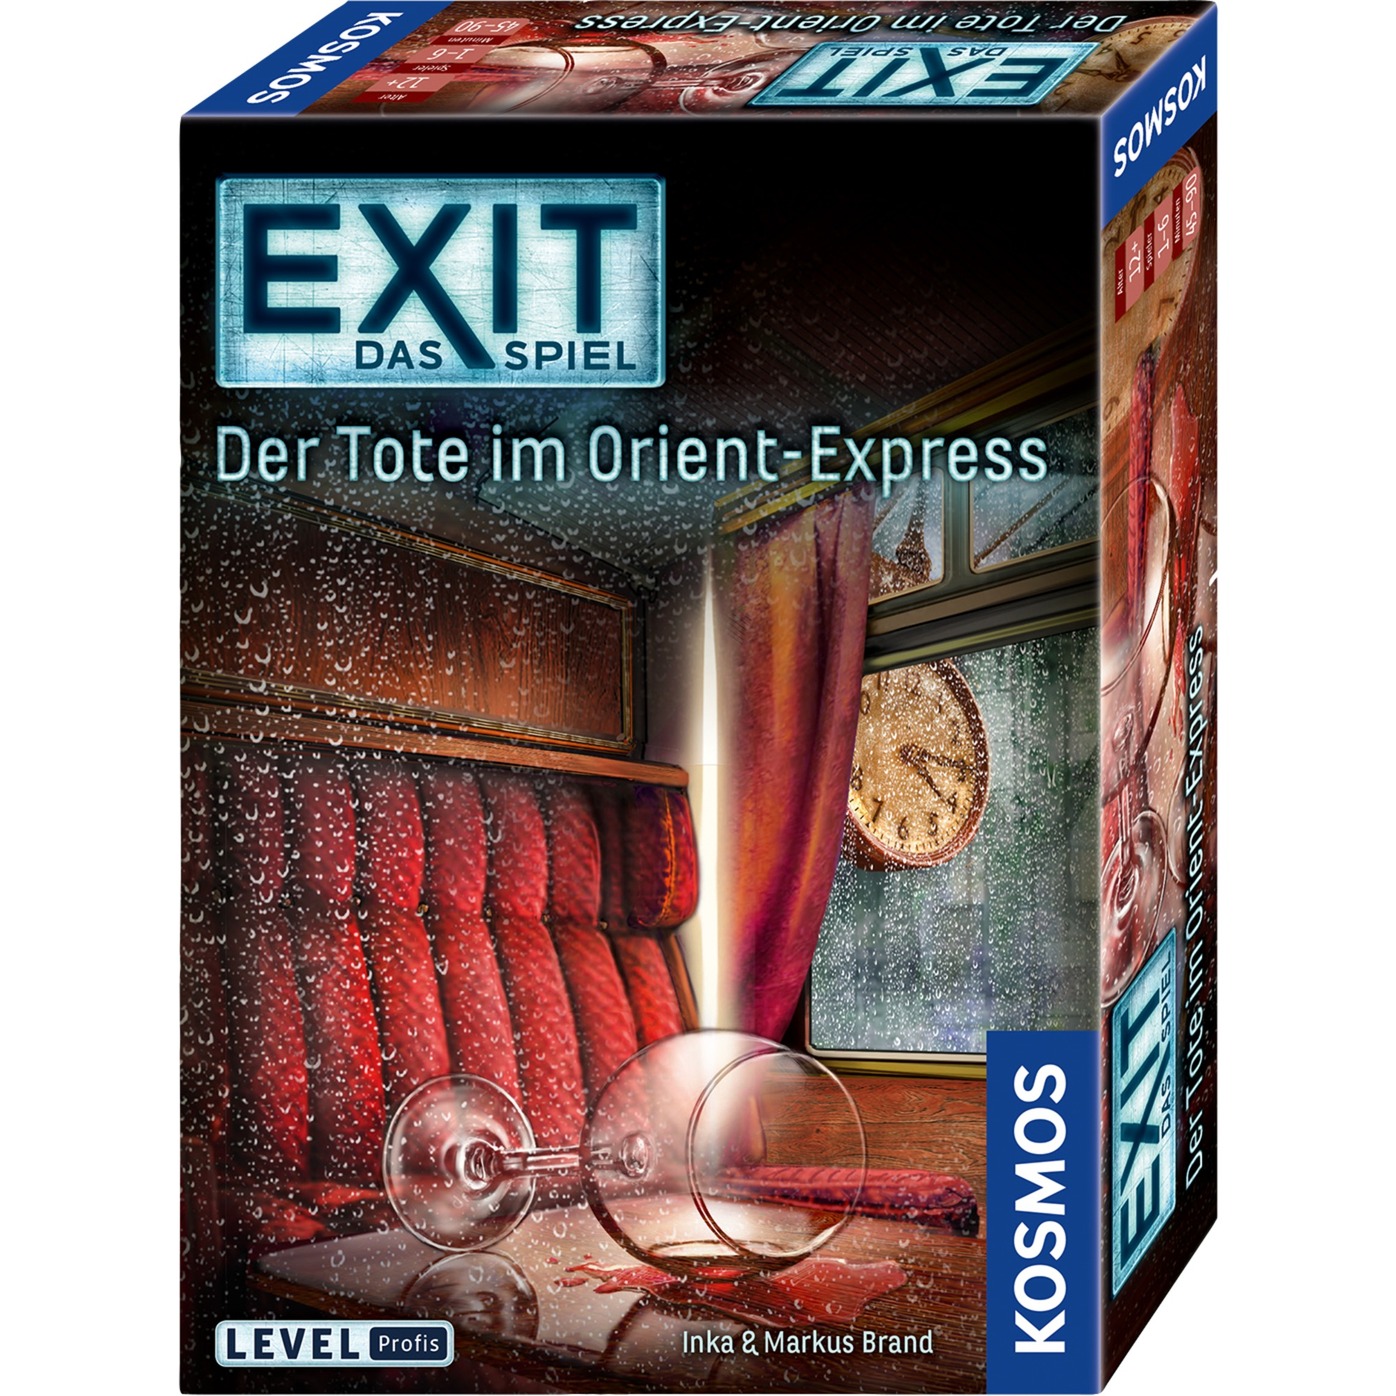 Image of Alternate - EXIT - Das Spiel - Der Tote im Orient-Express, Partyspiel online einkaufen bei Alternate